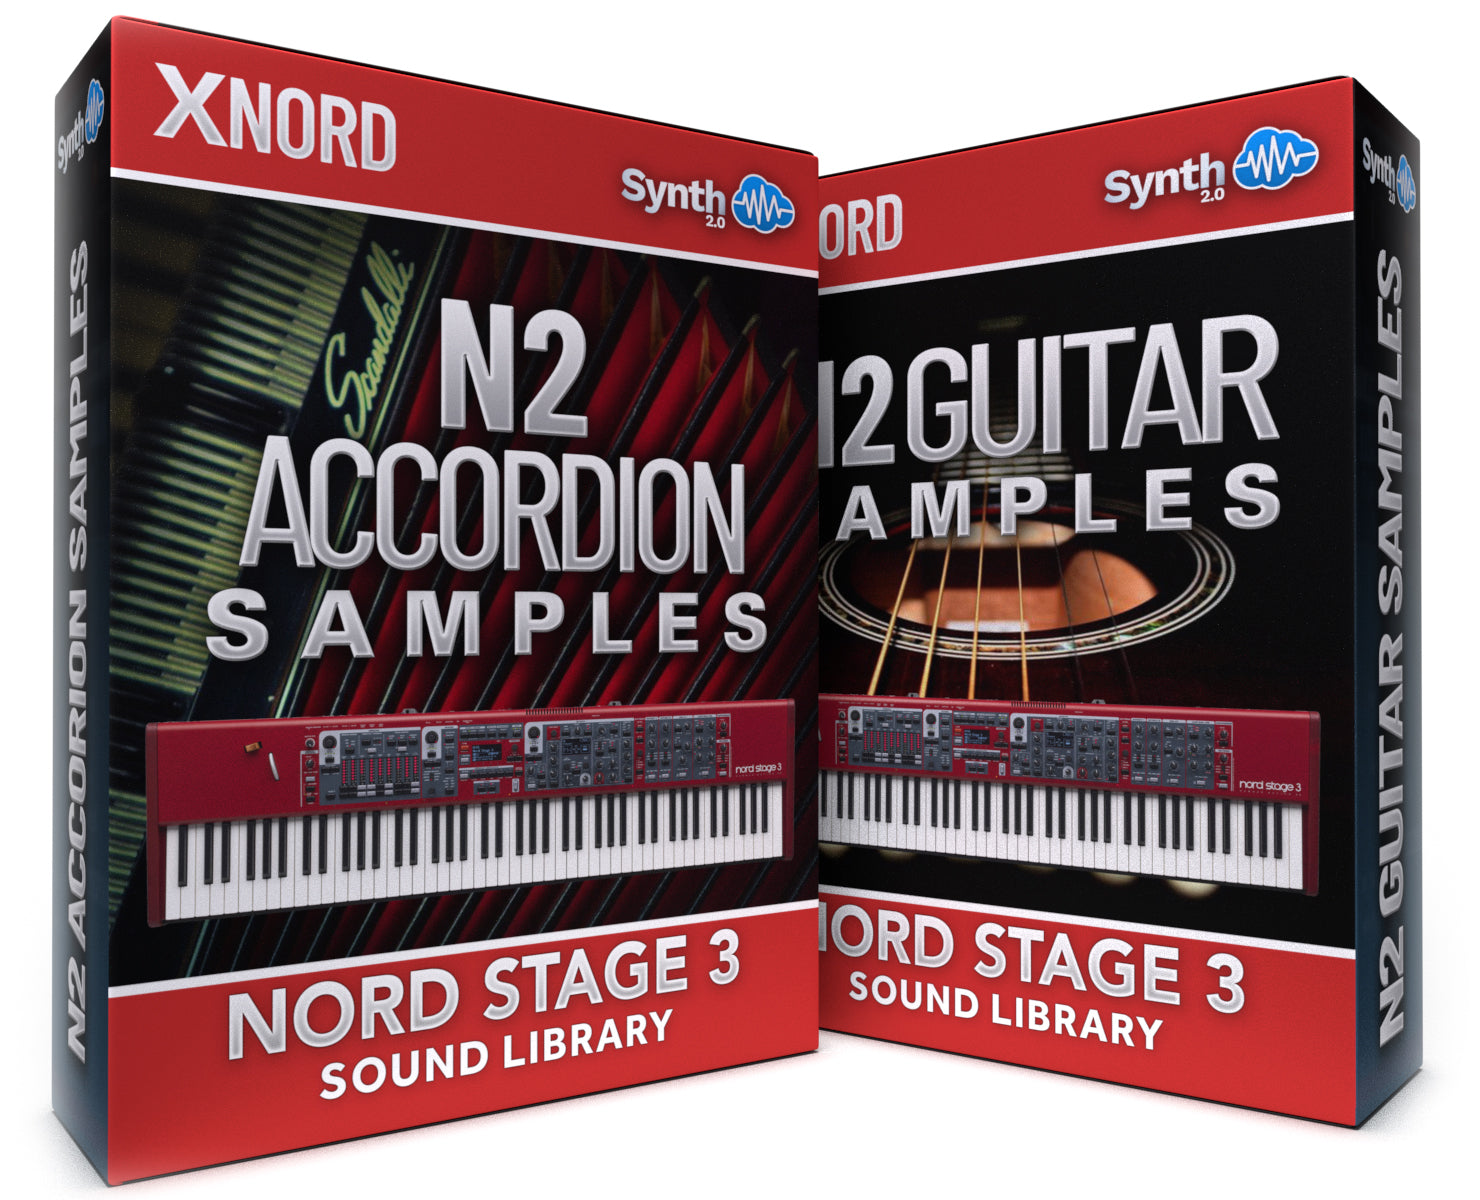 SCL134 - ( Bundle ) - N2 Accordion Samples + N2 Guitar Samples - Nord Stage 3